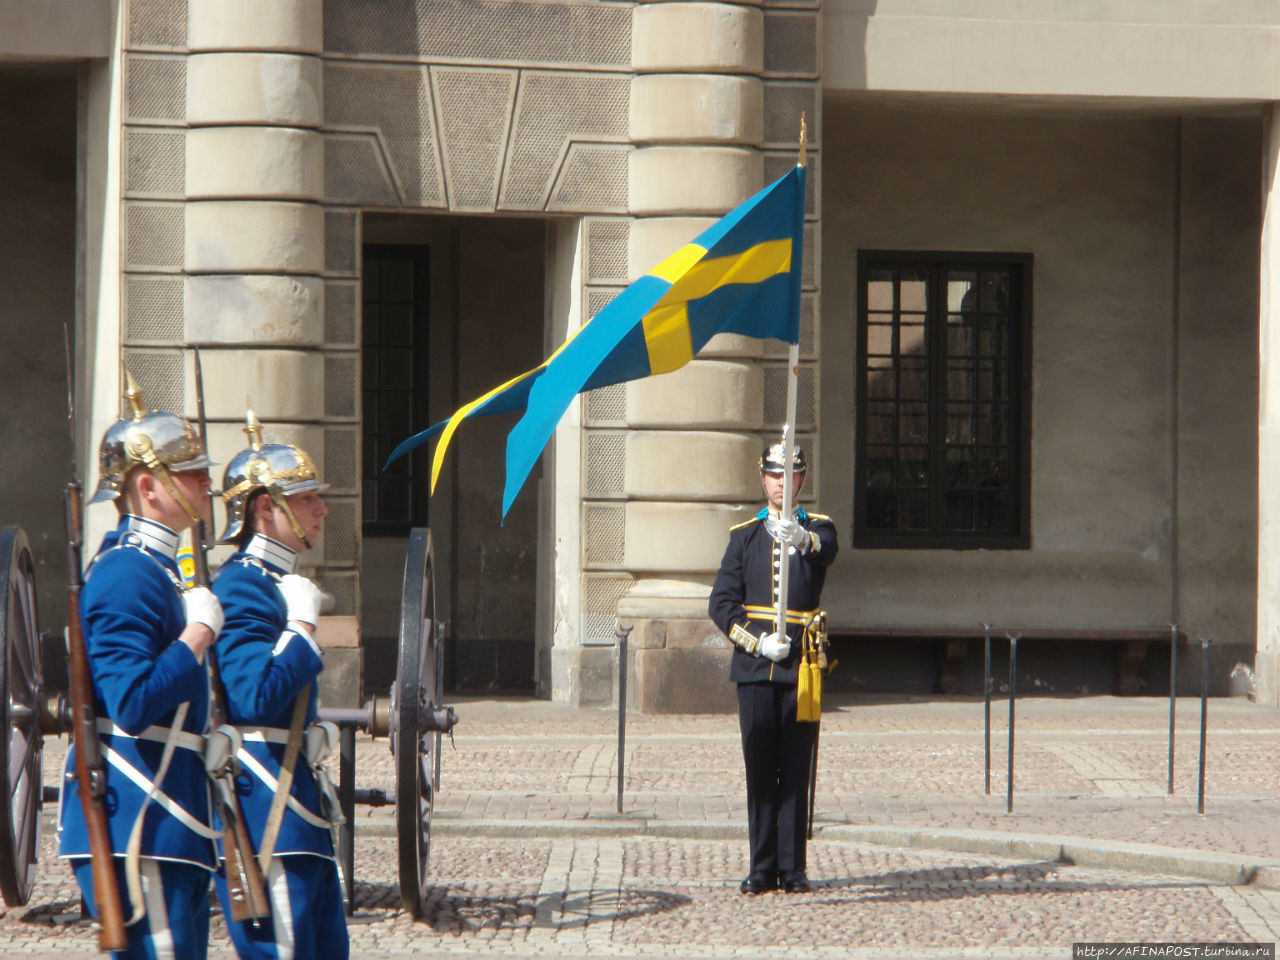 Стокгольм. Смена караула у Королевского дворца Стокгольм, Швеция